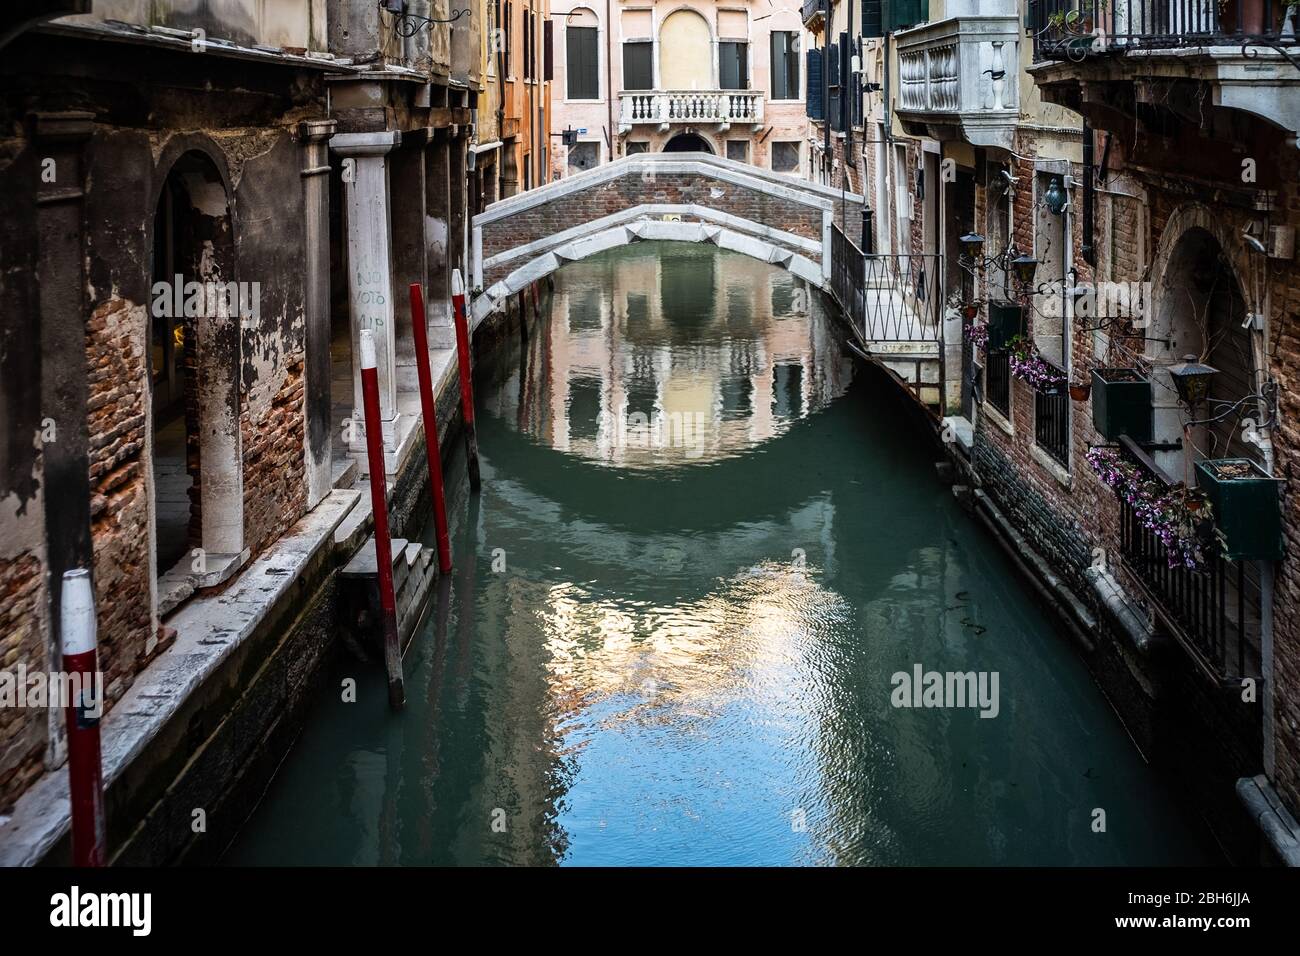 VENISE, ITALIE - AVRIL 2020: Un canal vide pendant le verrouillage national de la pandémie de Covid-19. Banque D'Images